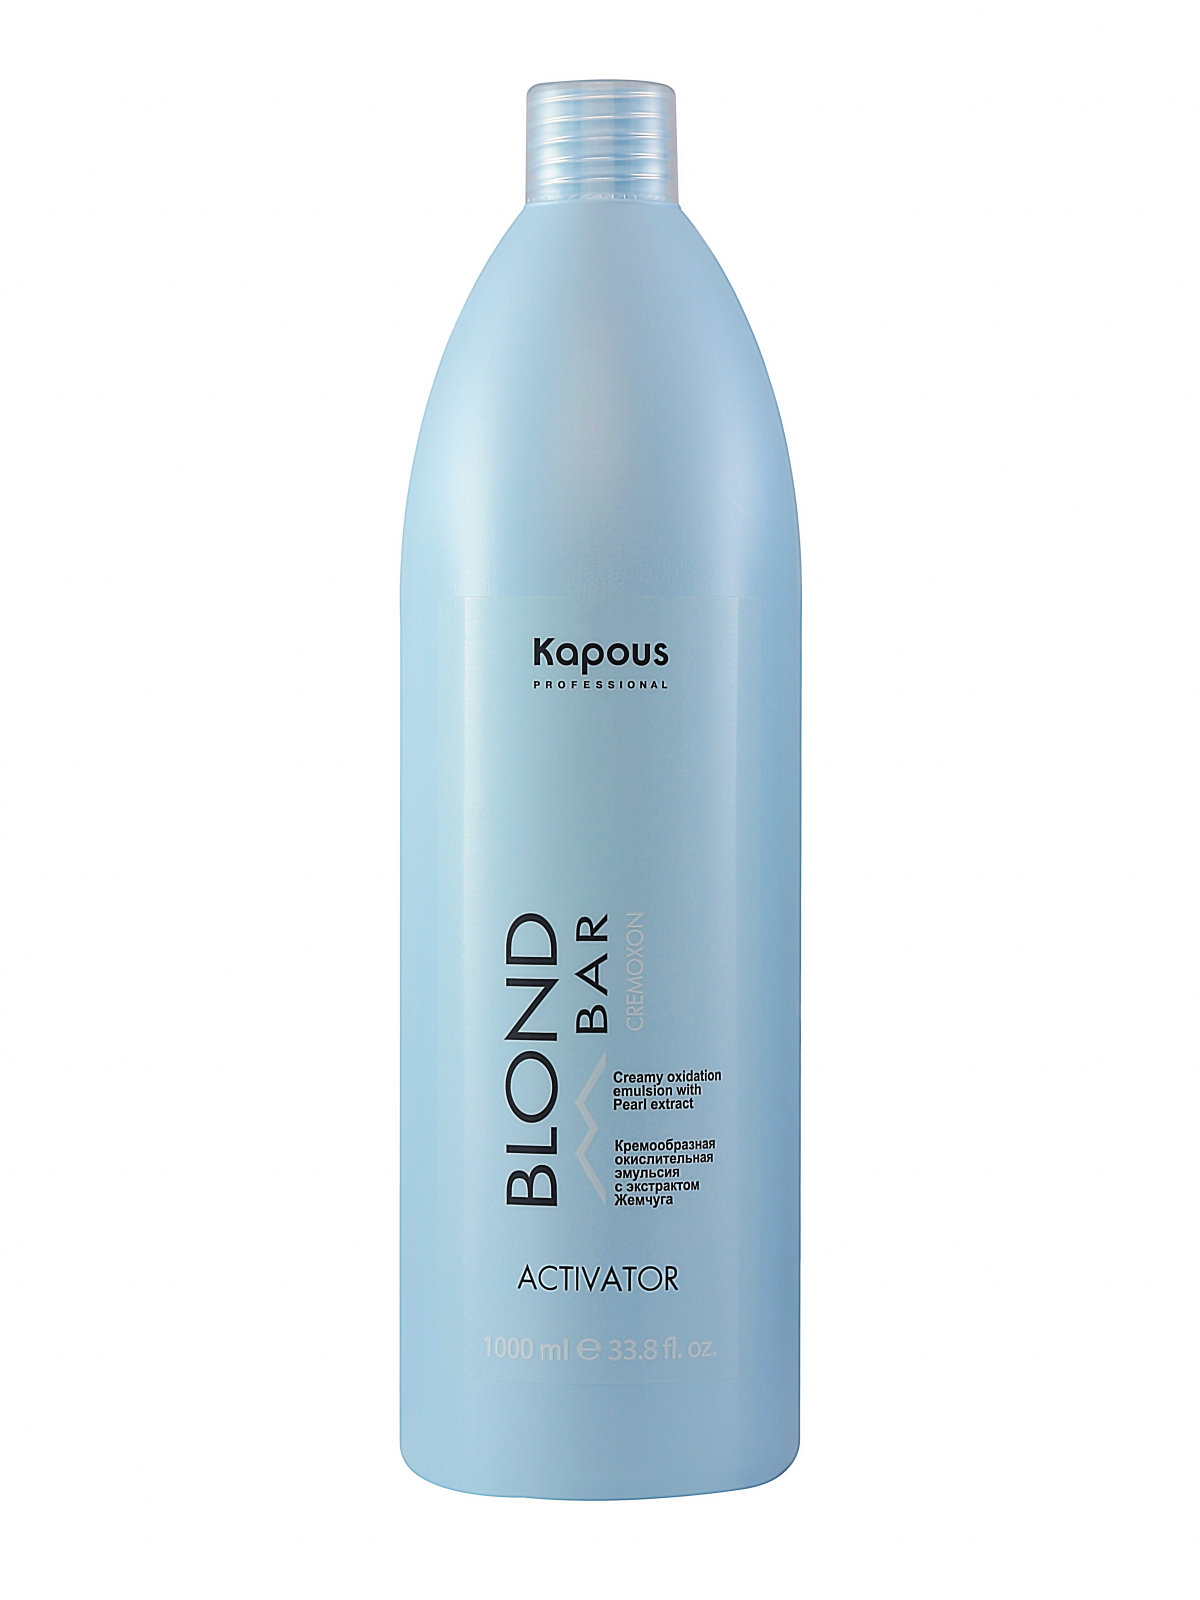 Активатор Kapous BLOND BAR для окрашивания волос 1000 мл пазл италия озеро брайес 1000 элементов